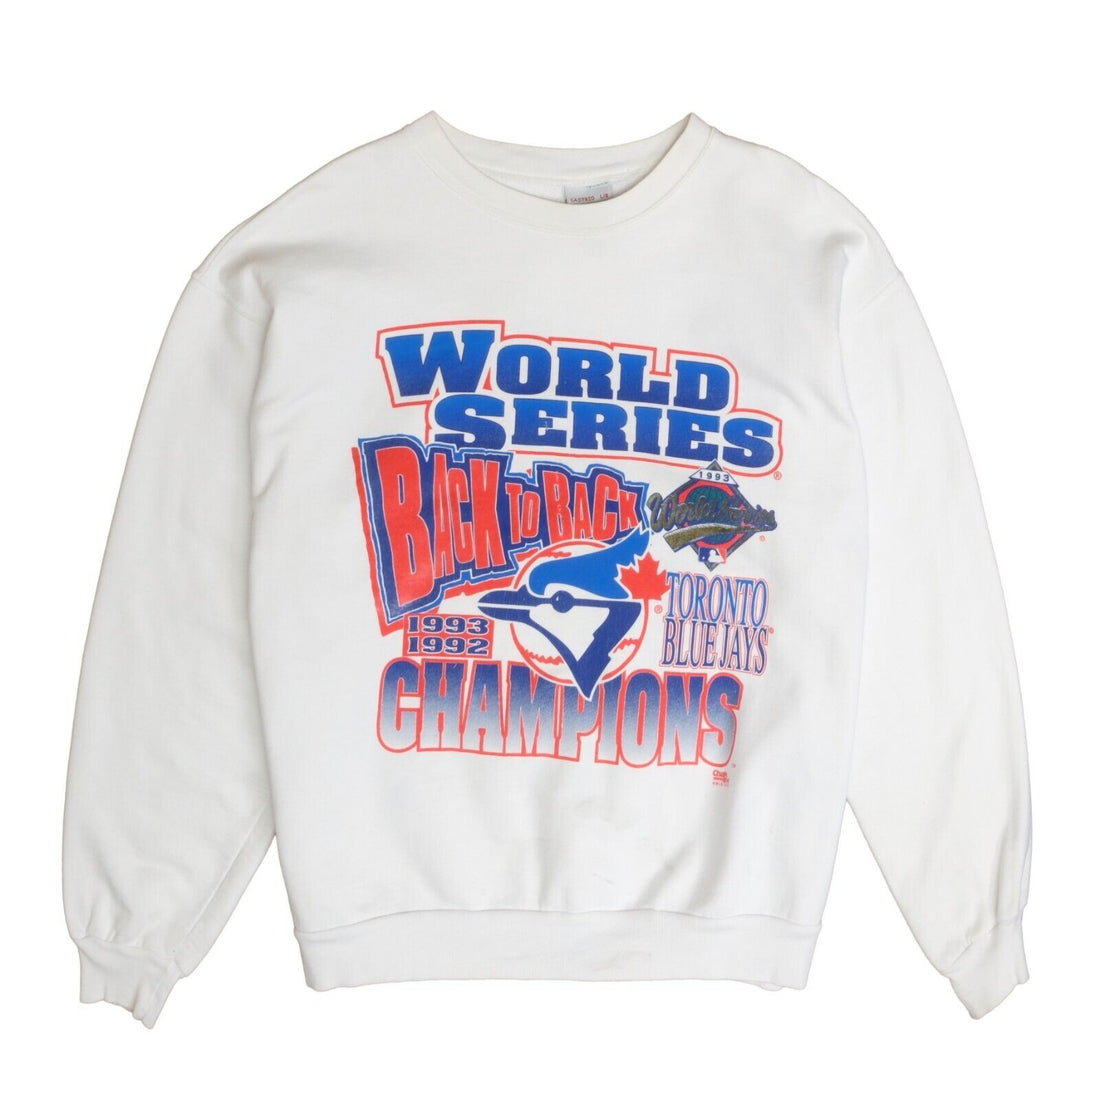 Vintage Toronto Blue Jays World Series Champions Sweatshirt Large 1993 90s MLB